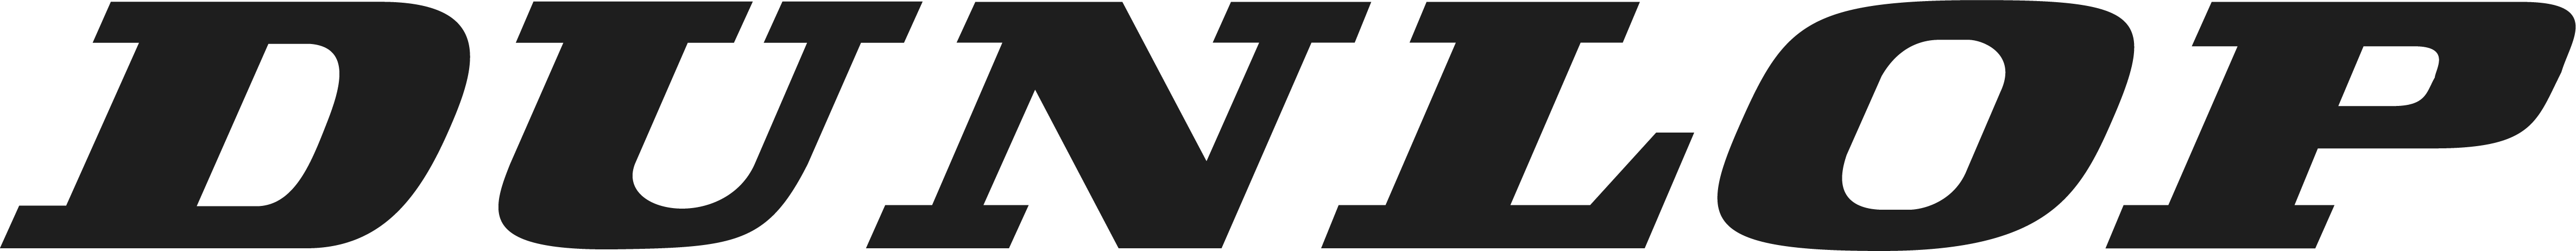 Imagem logo